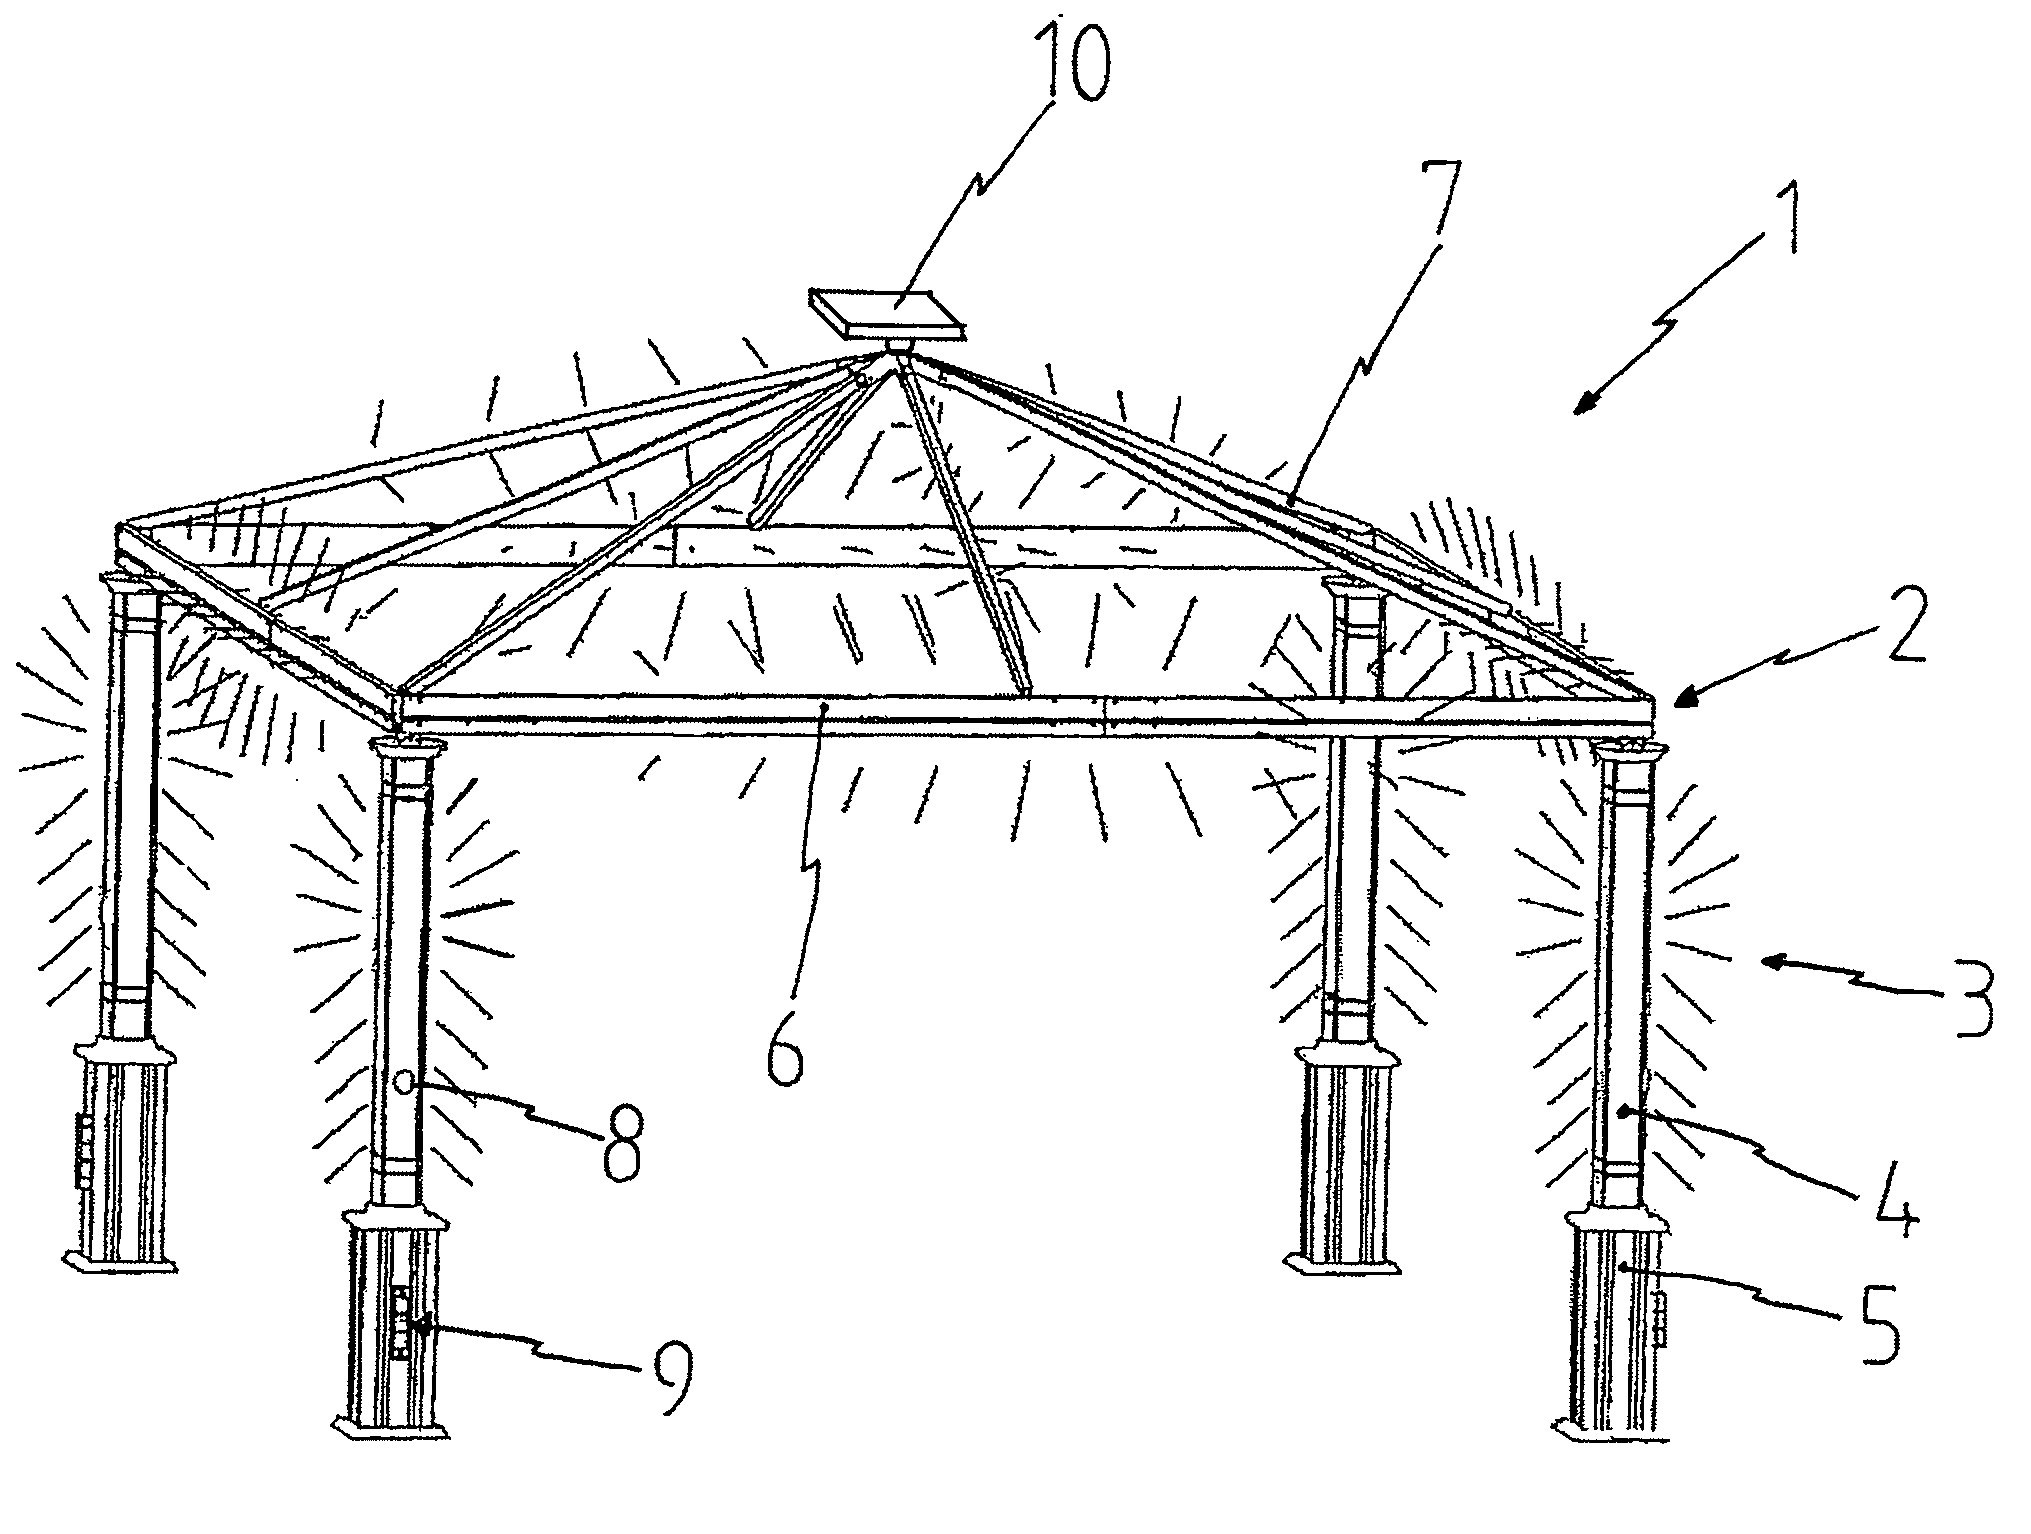 Canopy with illumination device